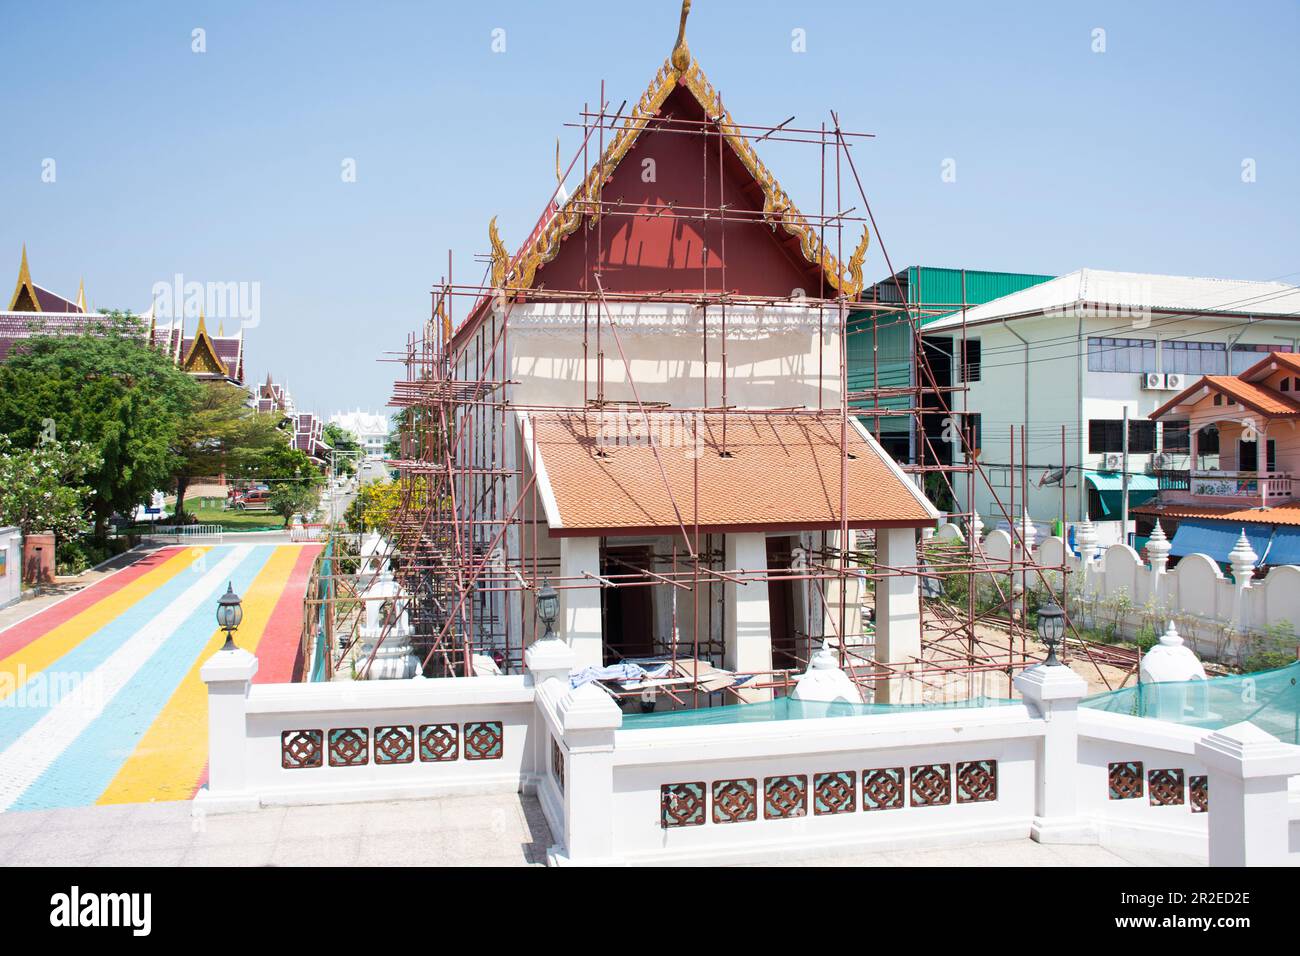 Les travailleurs thaïlandais rénovent et construisent des échafaudages sur des ruines antiques, des ubosots ou des salles d'ordination antiques de Wat Ku ou Phra Nang Rua LOM temple à Pa Banque D'Images